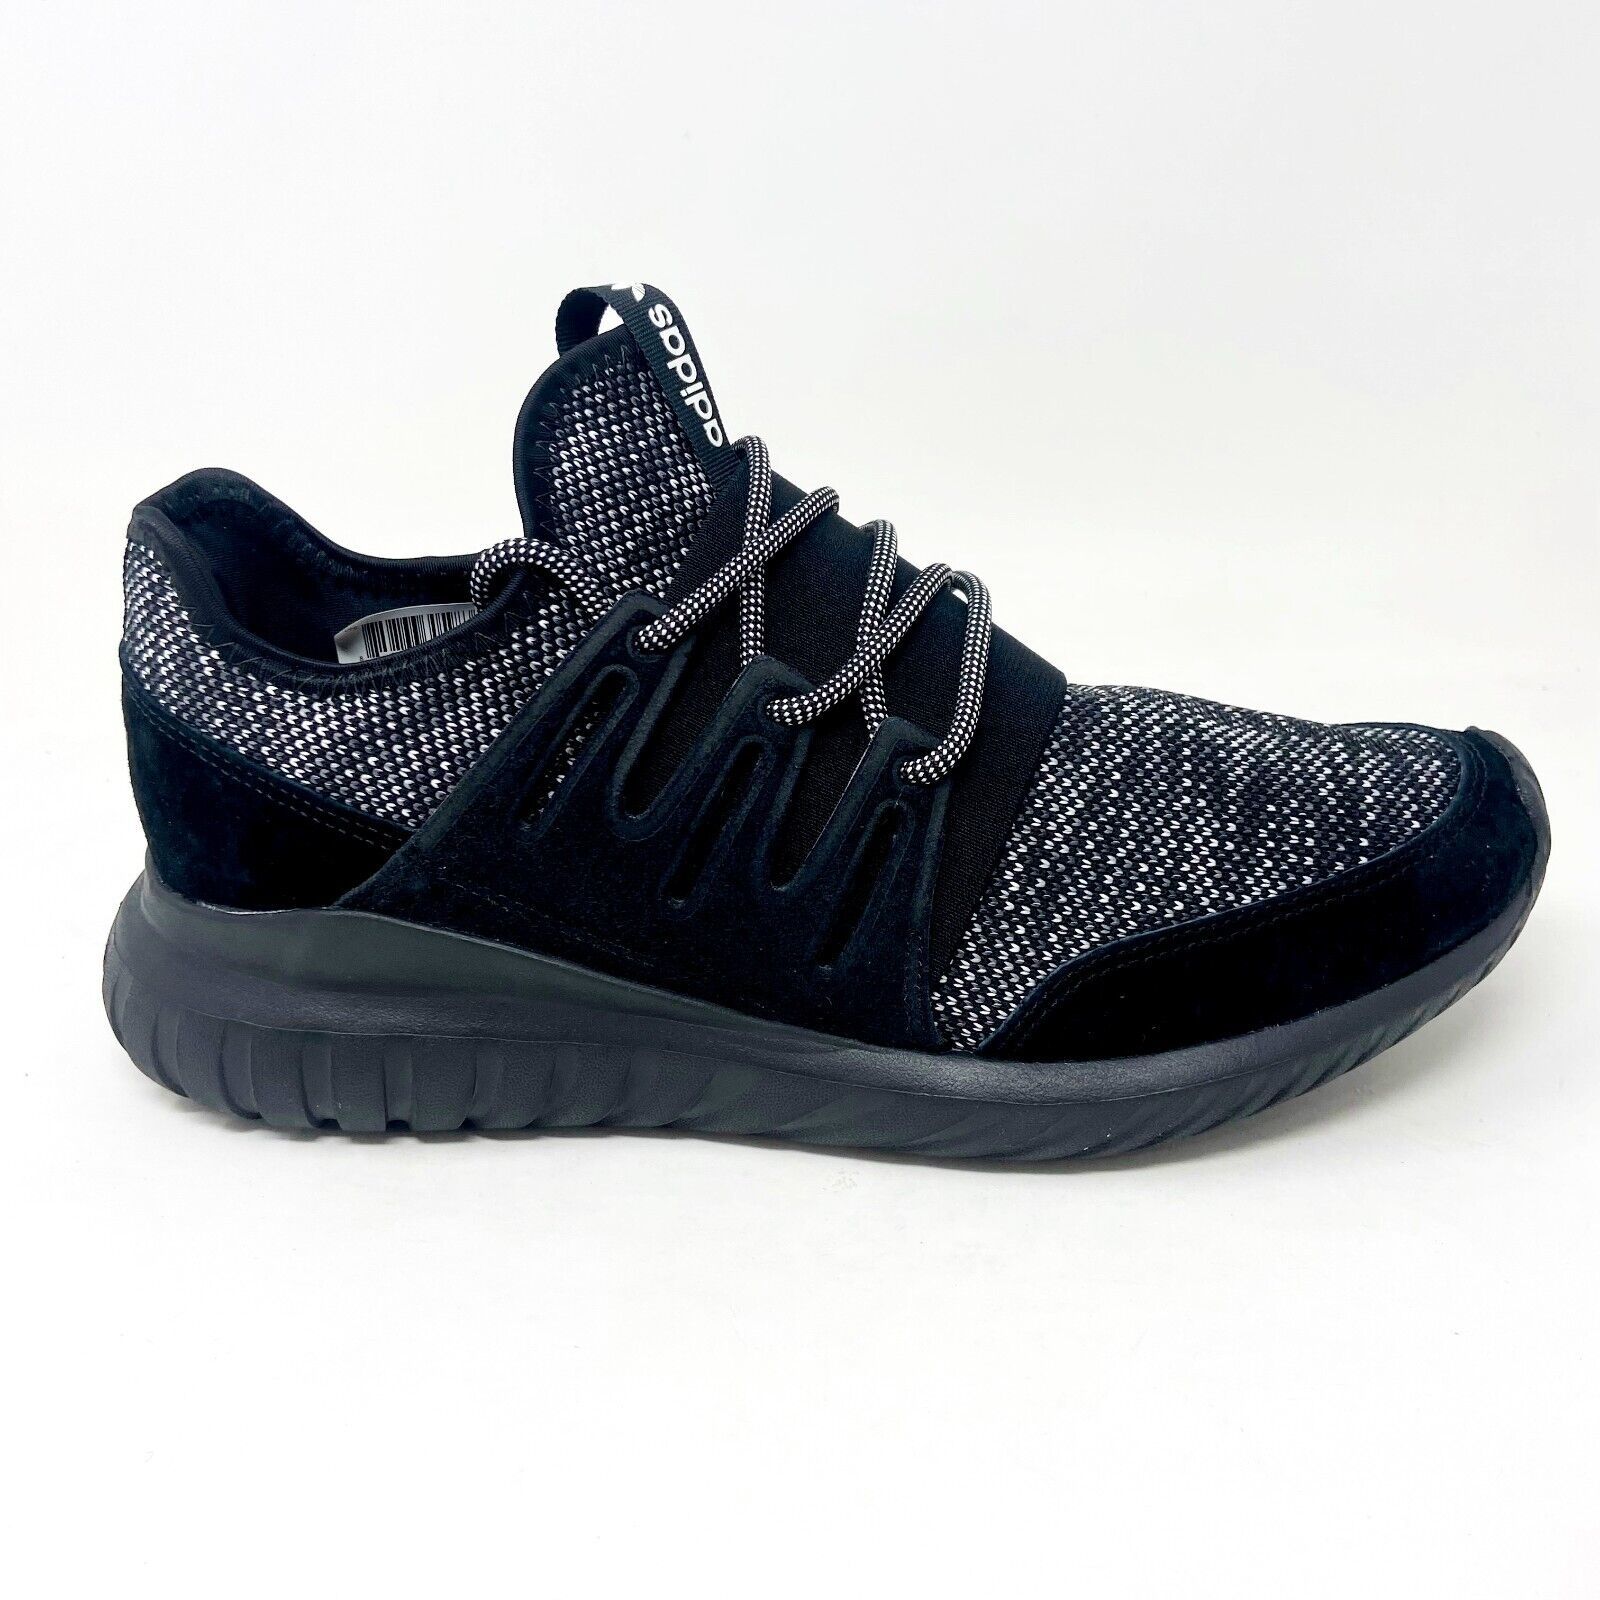 Adidas Originals Tubular Radial Black Gray Mens Casual Sneakers BB2394